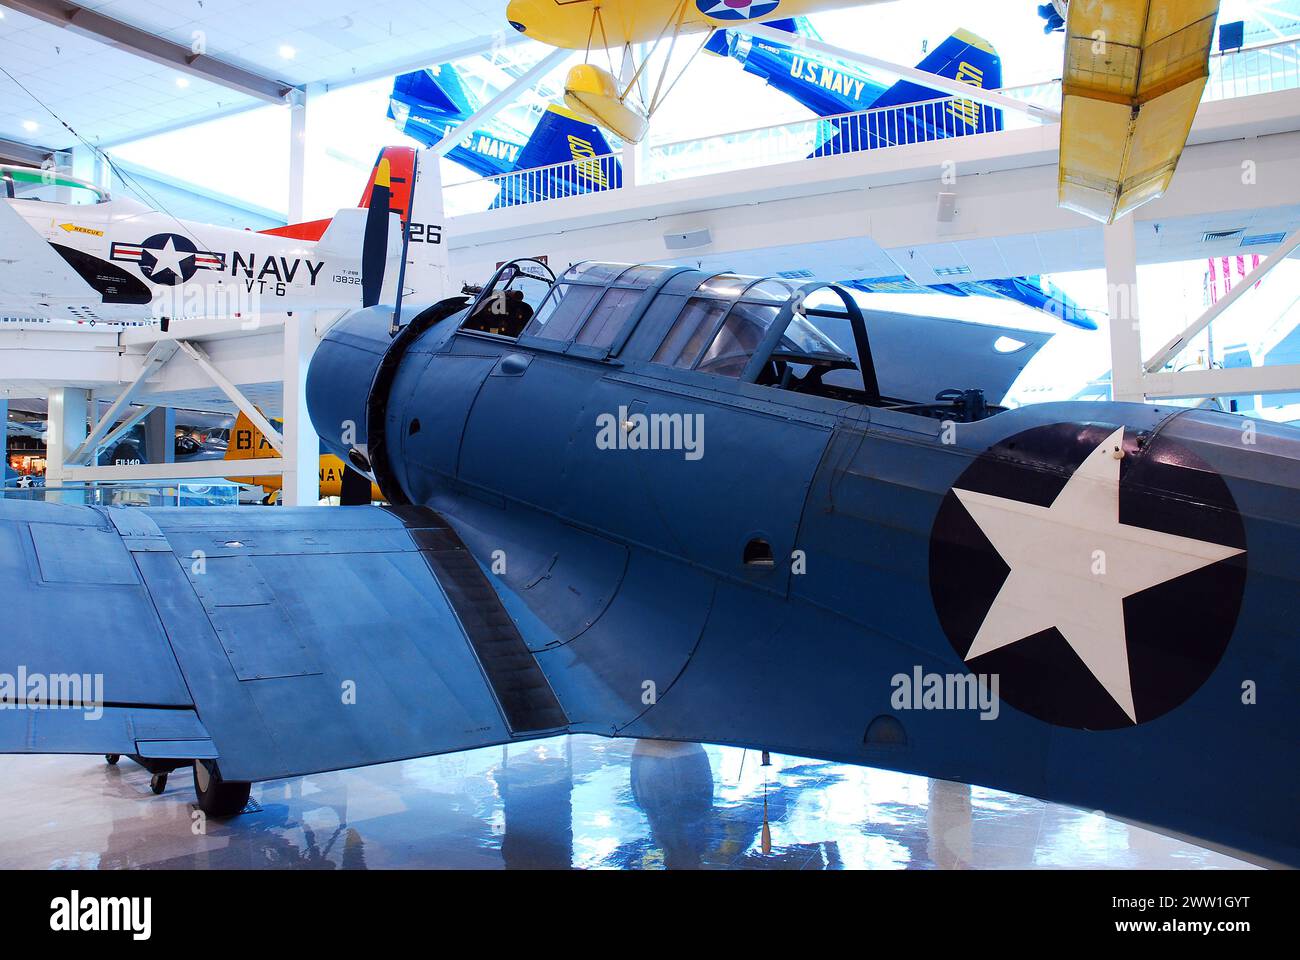 Des avions américains historiques de la seconde Guerre mondiale sont exposés au Naval Air Museum de Pensacola, en Floride Banque D'Images